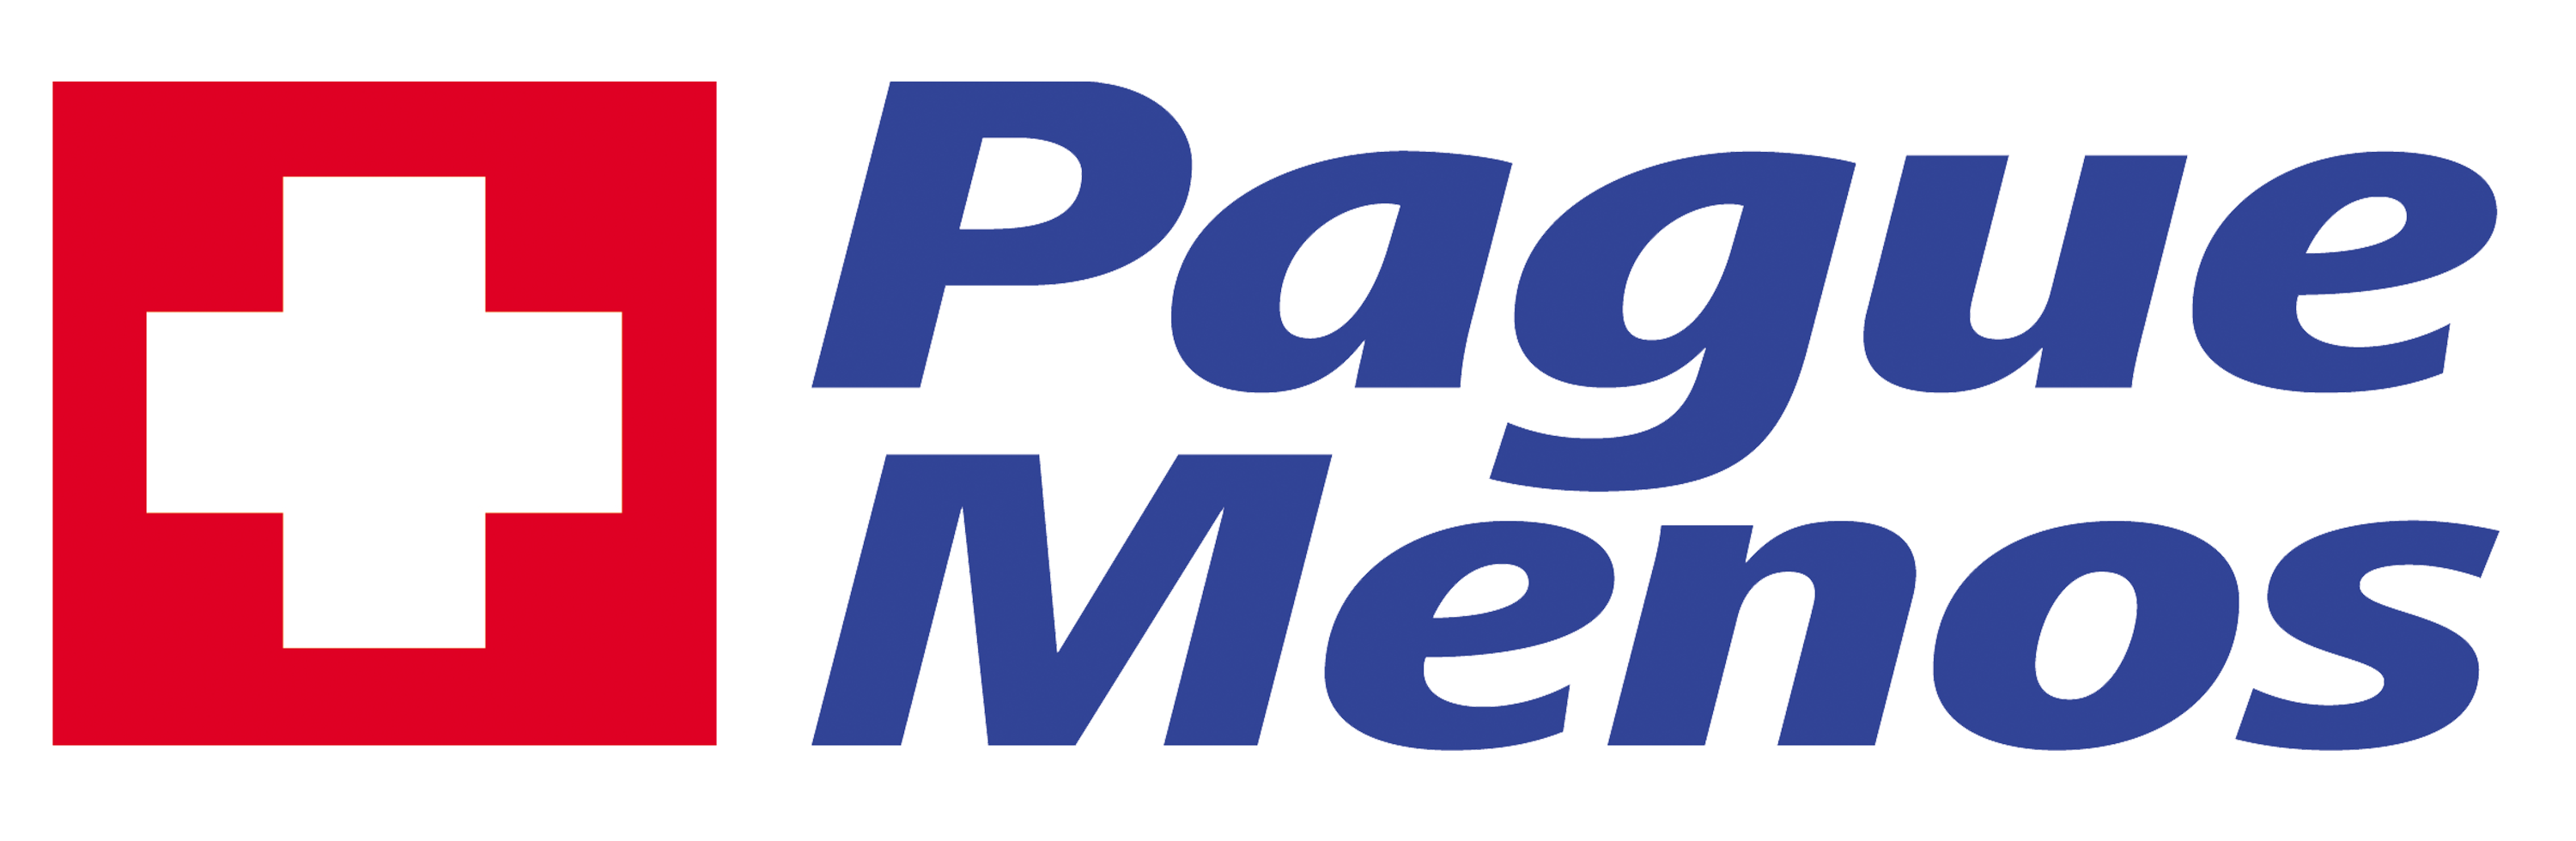 Farmacia Pague Menos - Shorion - GO